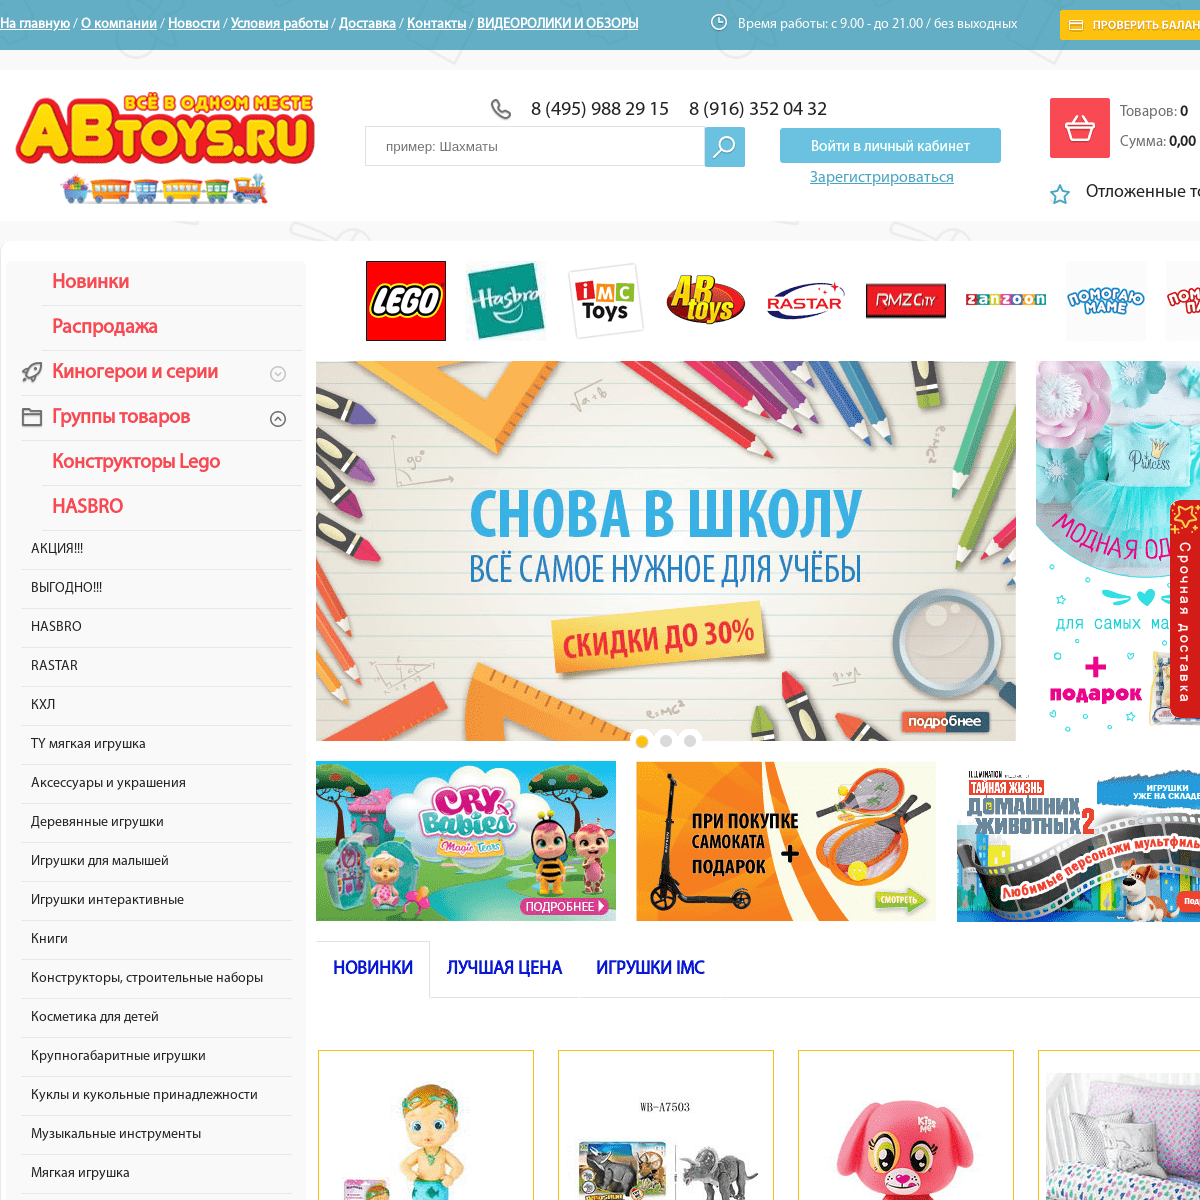 Интернет магазин игрушек ABtoys.ru – купить детские игрушки по низким ценам с доставкой по России